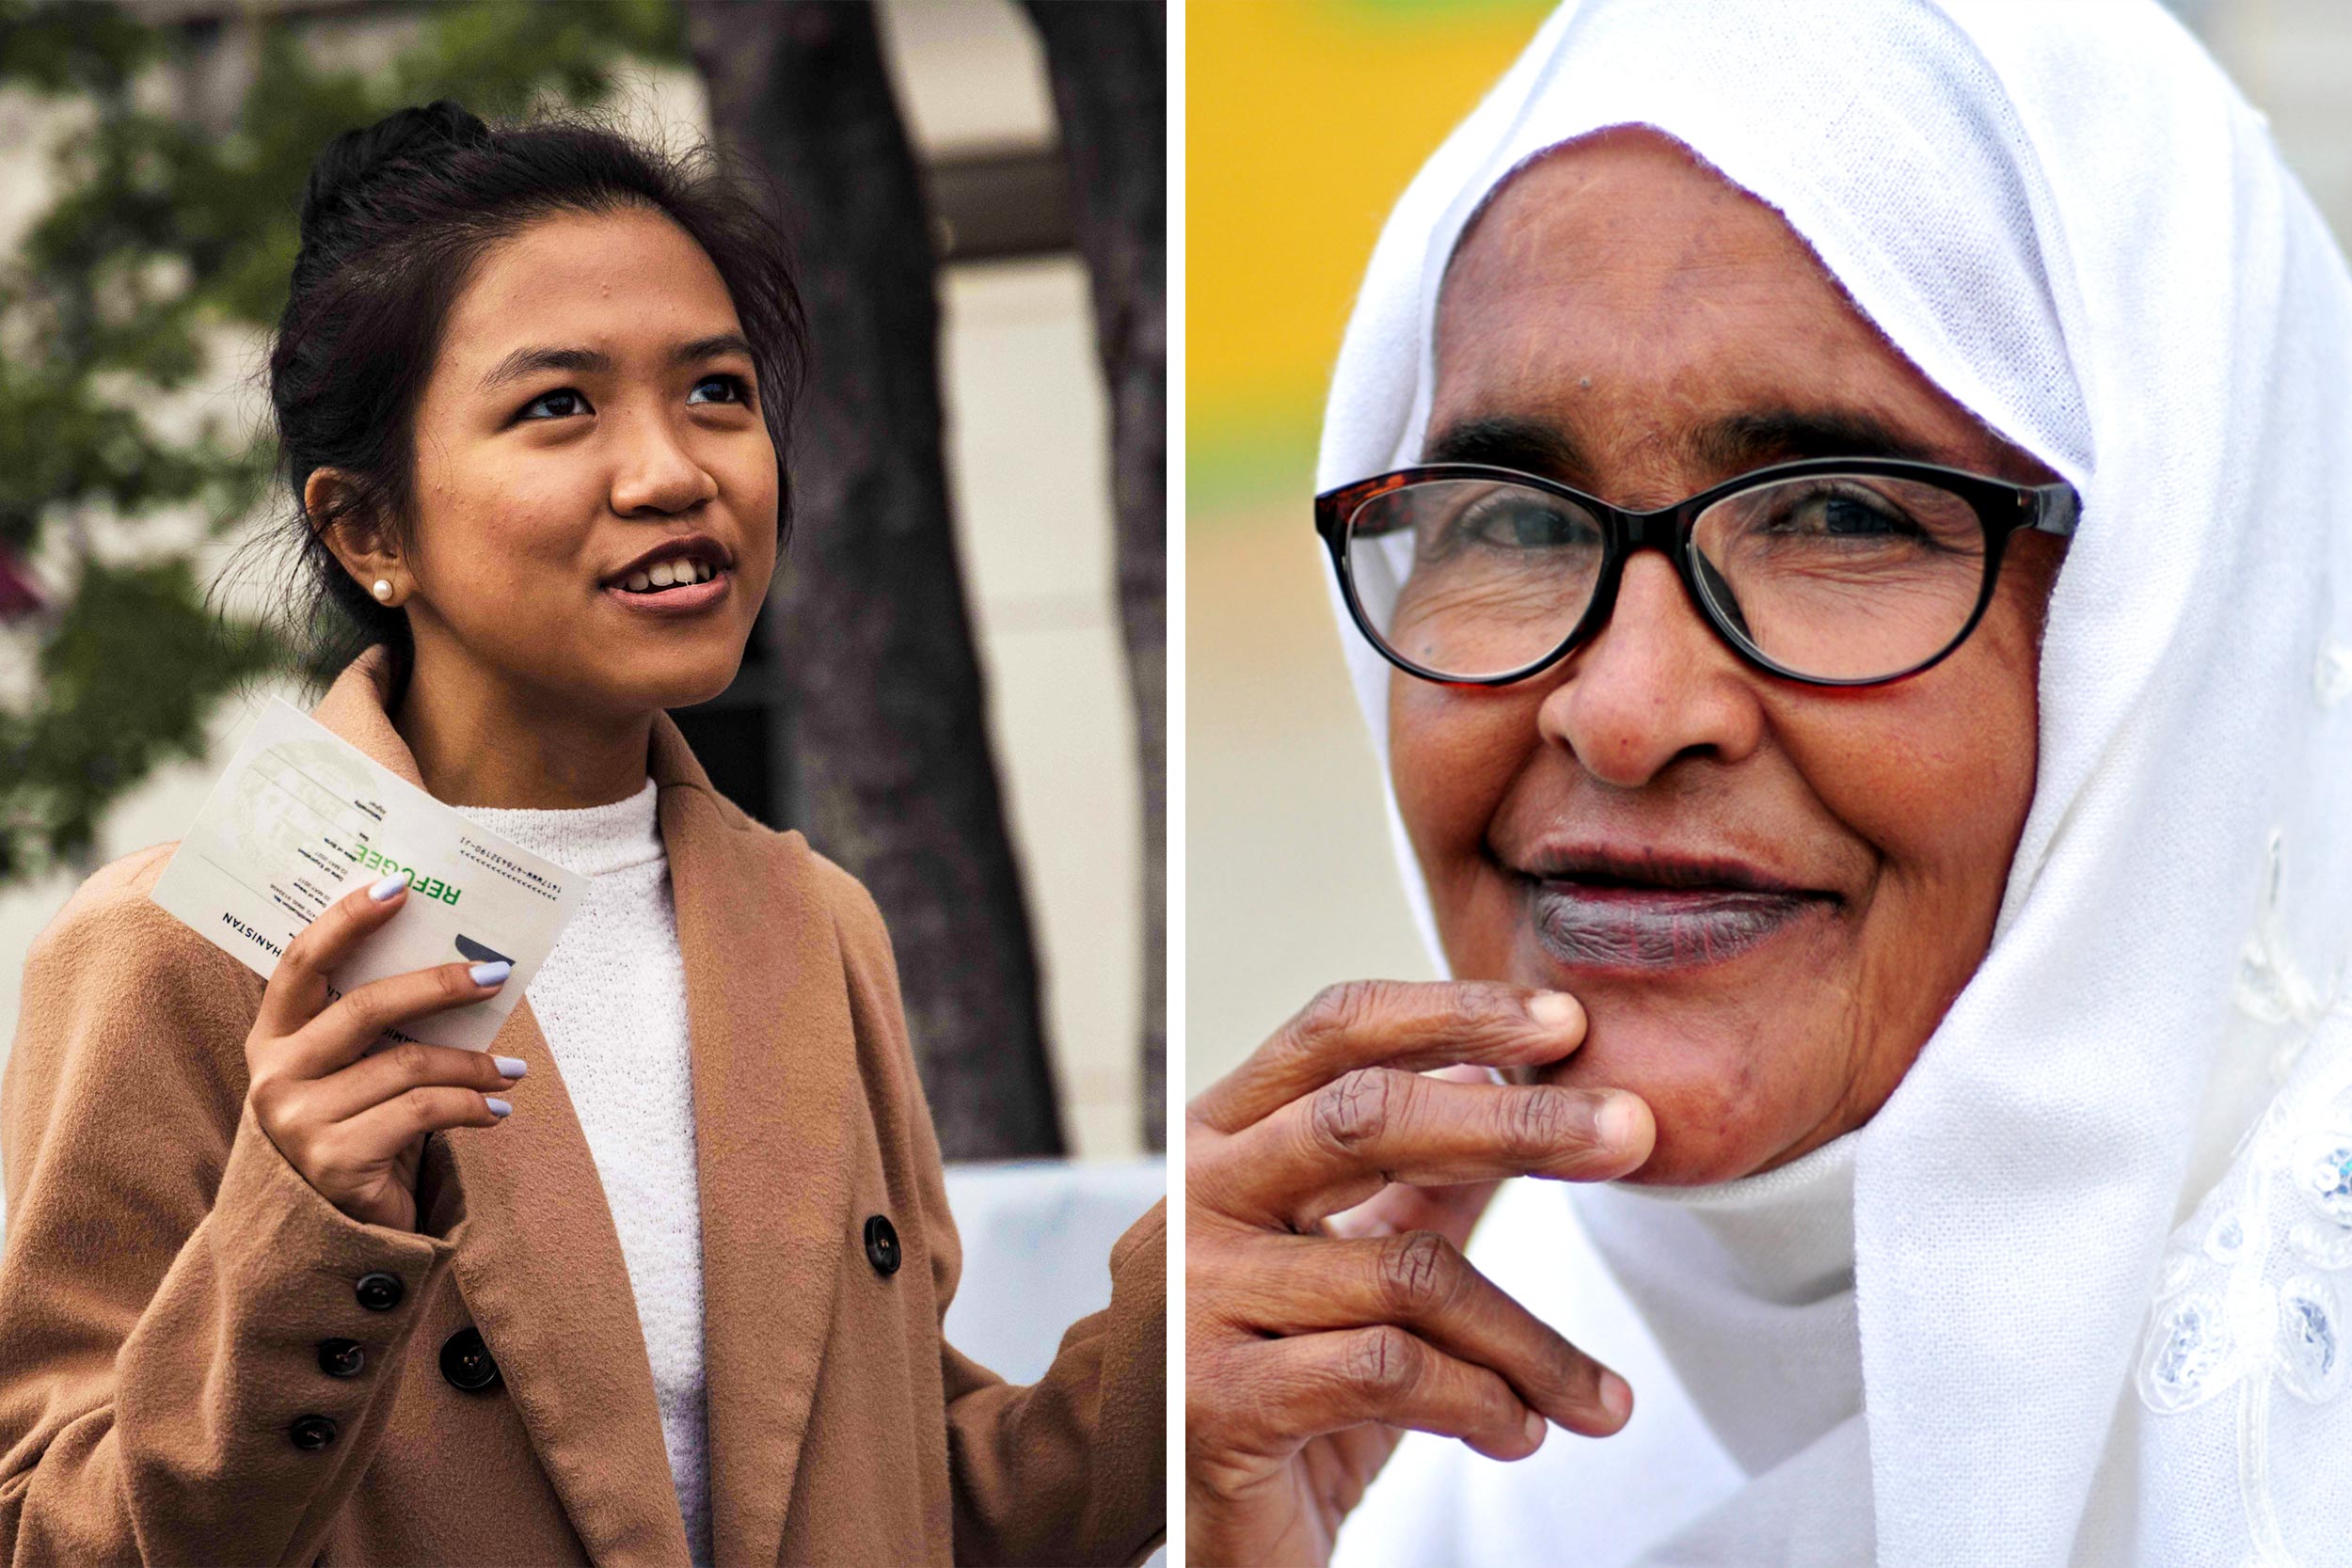 Headshots left to right: Bawi and Mama Amina